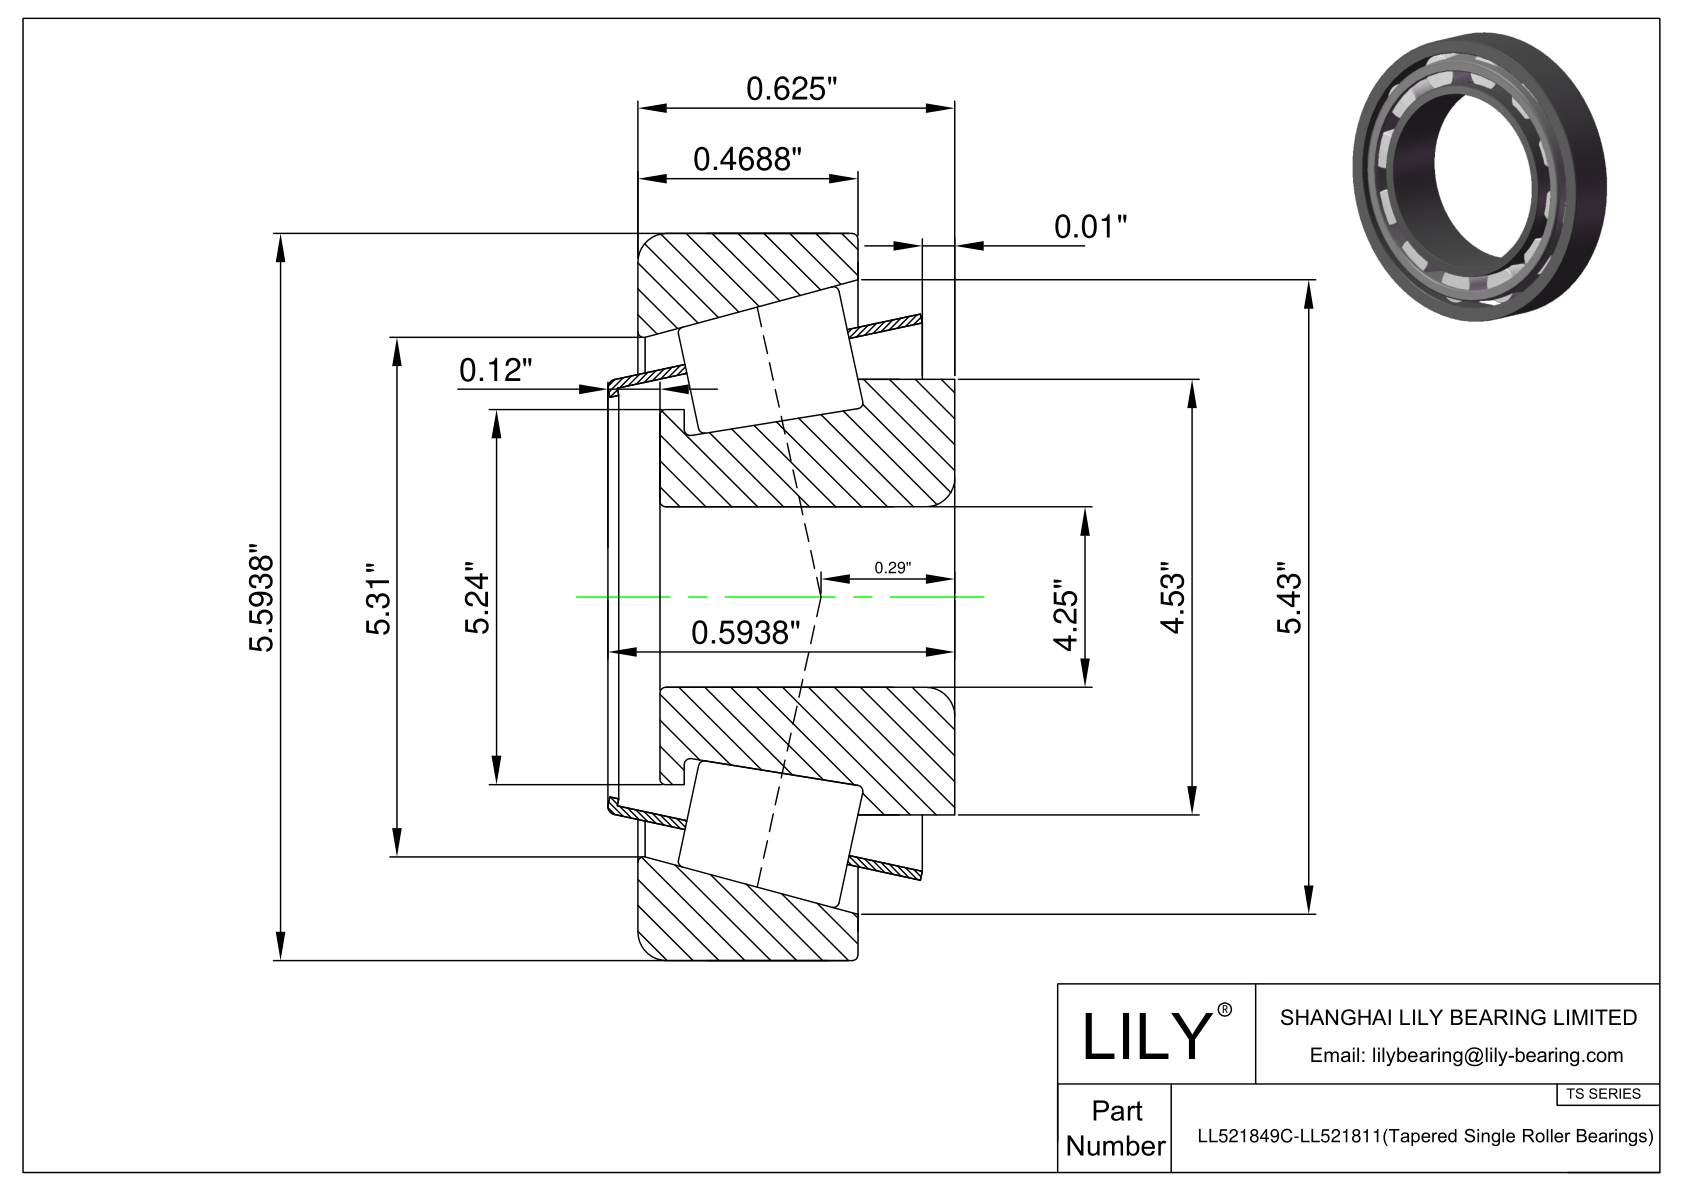 LL521849C-LL521811 TS系列(圆锥单滚子轴承)(英制) CAD图形